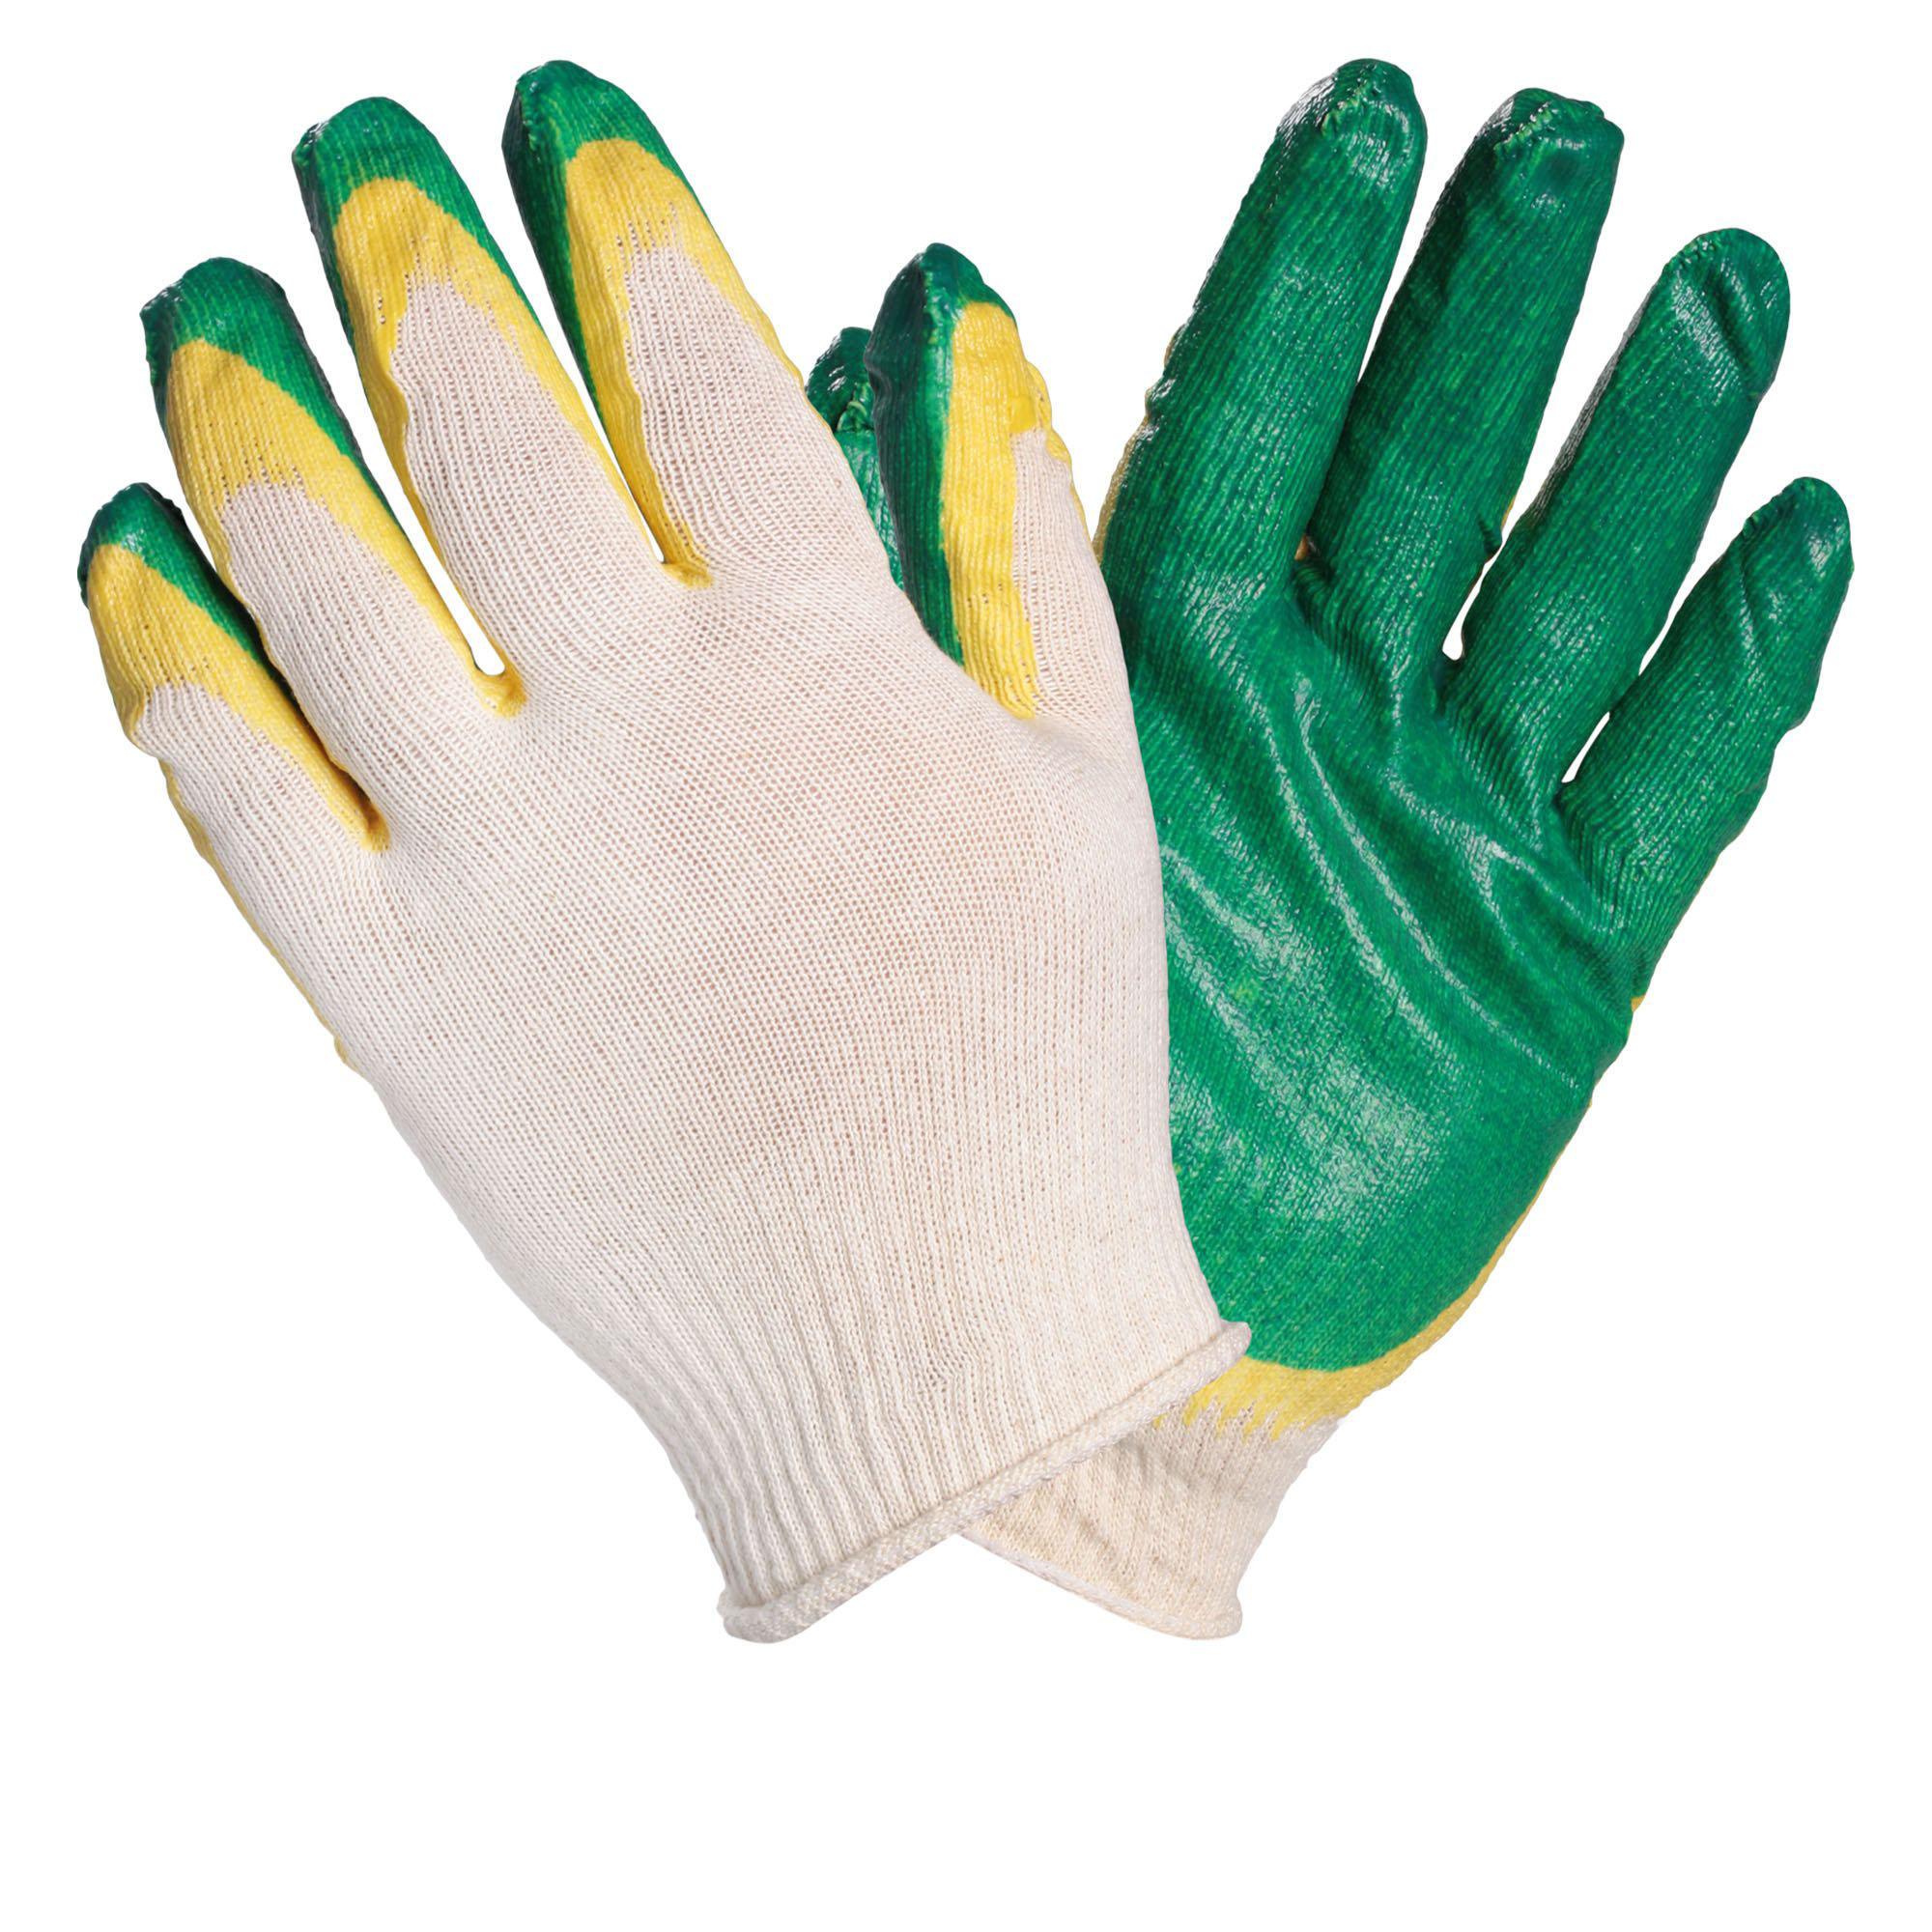 AIRLINE AWGC08 Перчатки ХБ с двойным латексным покрытием ладони, зеленые (1 пара) перчатки хлопчатобумажные стандарт 5 нитей с двойным латексным обливом 10 xl зеленые